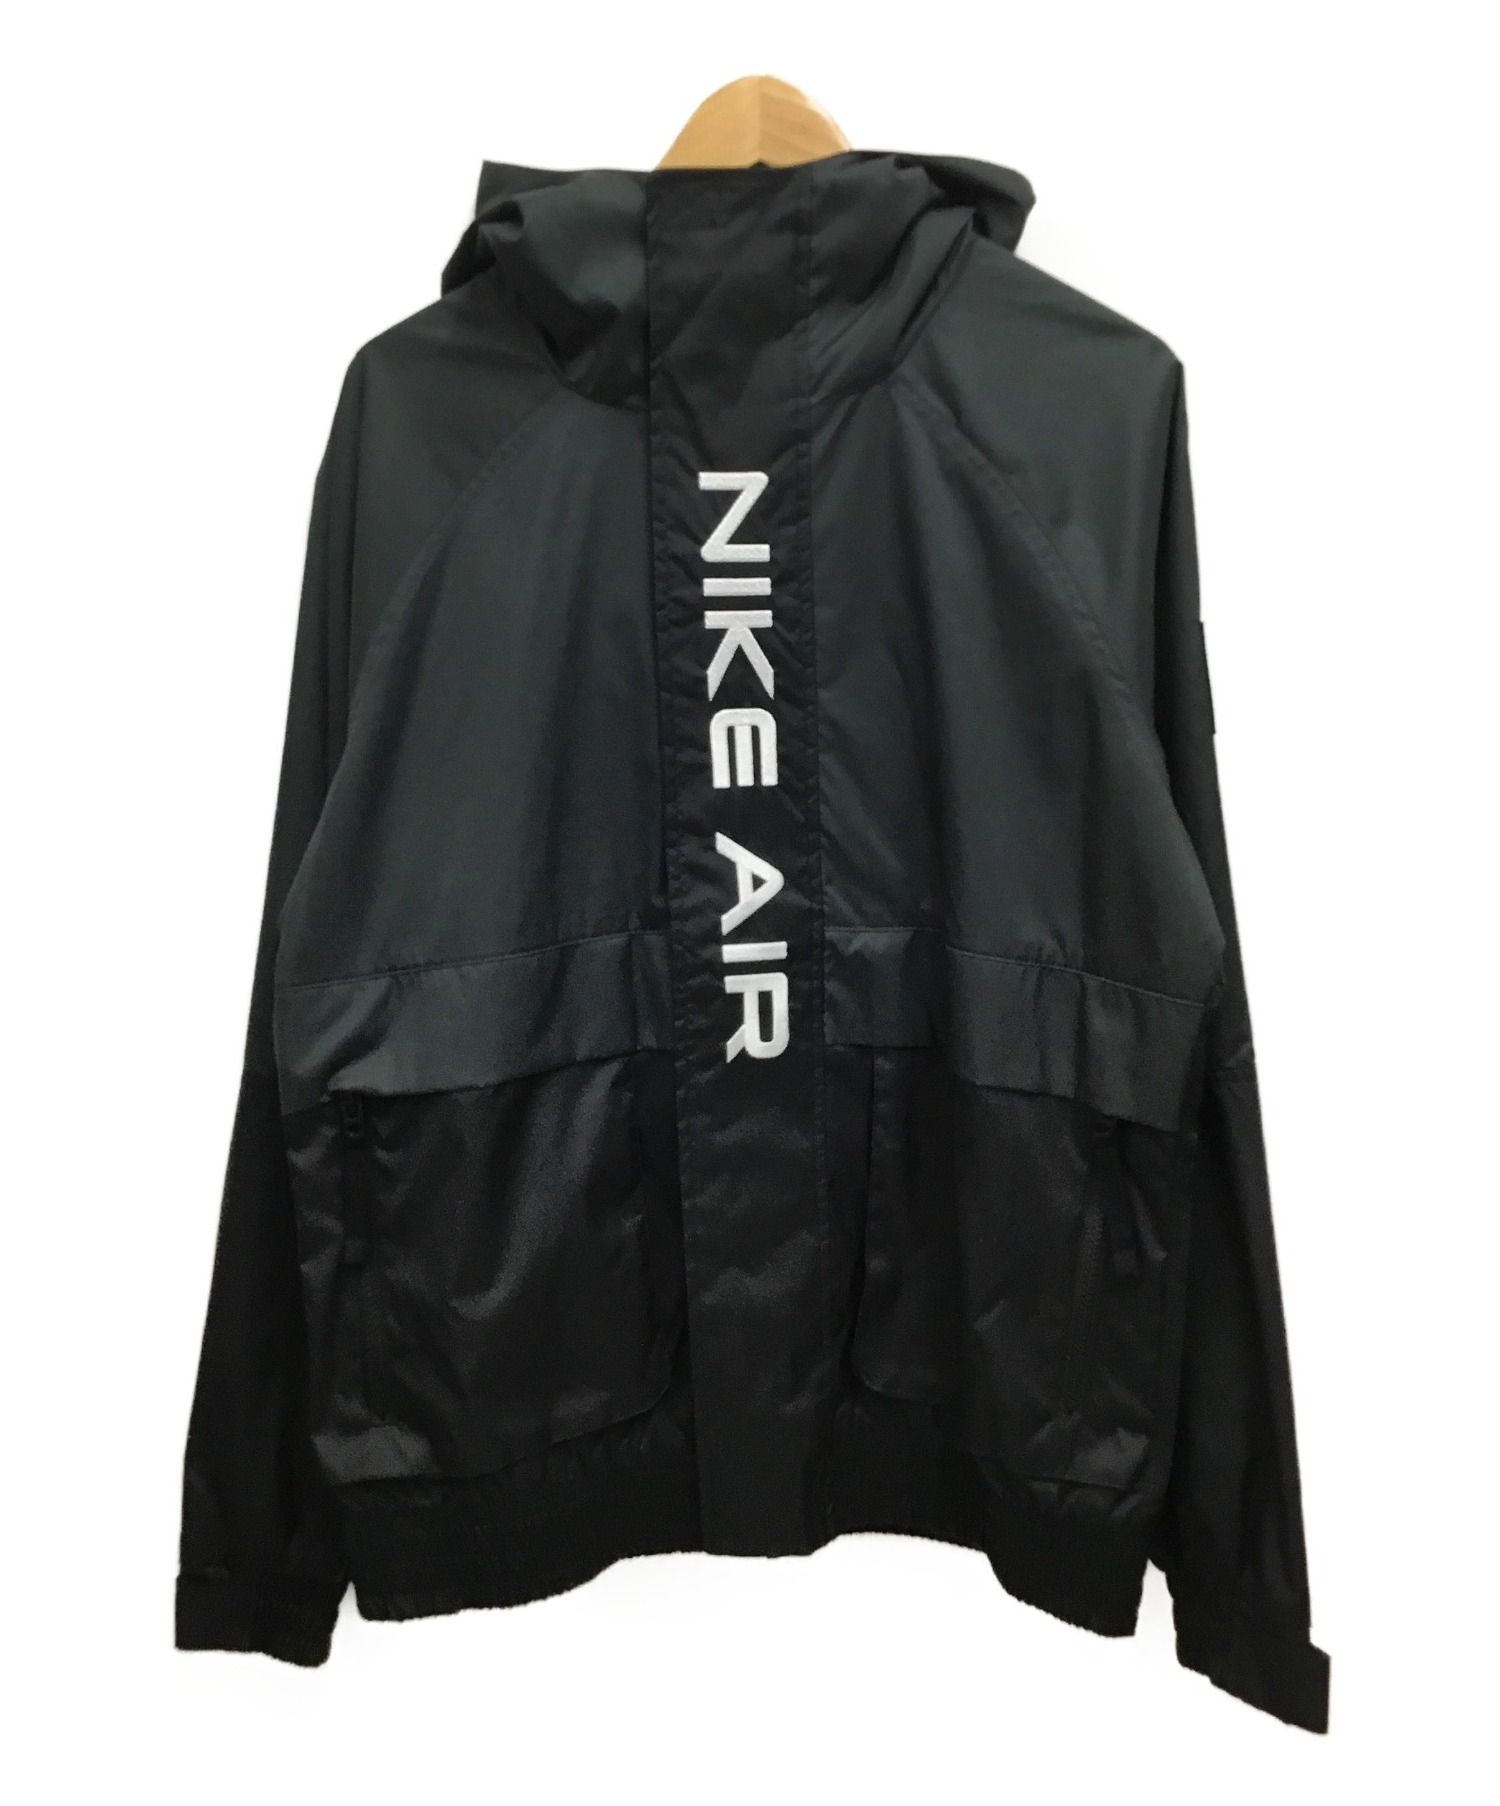 NIKE (ナイキ) ウーブン フーディ ジャケット ブラック サイズ:S